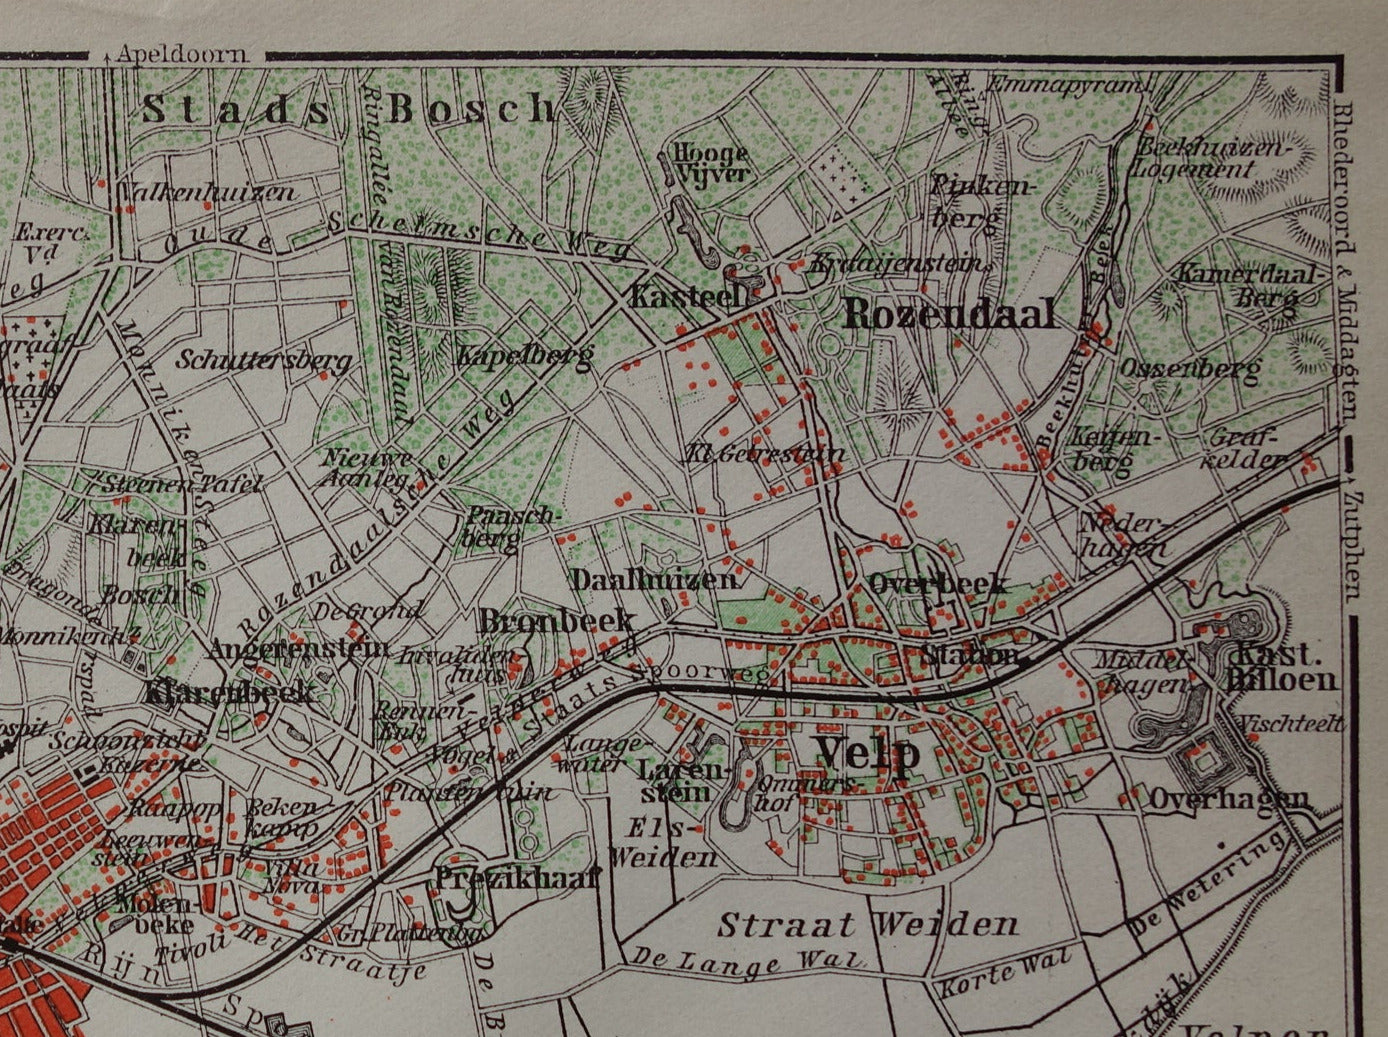 ARNHEM 1910 kleine antieke landkaart / plattegrond van Arnhem en omgeving originele oude kaart Velp Rozendaal